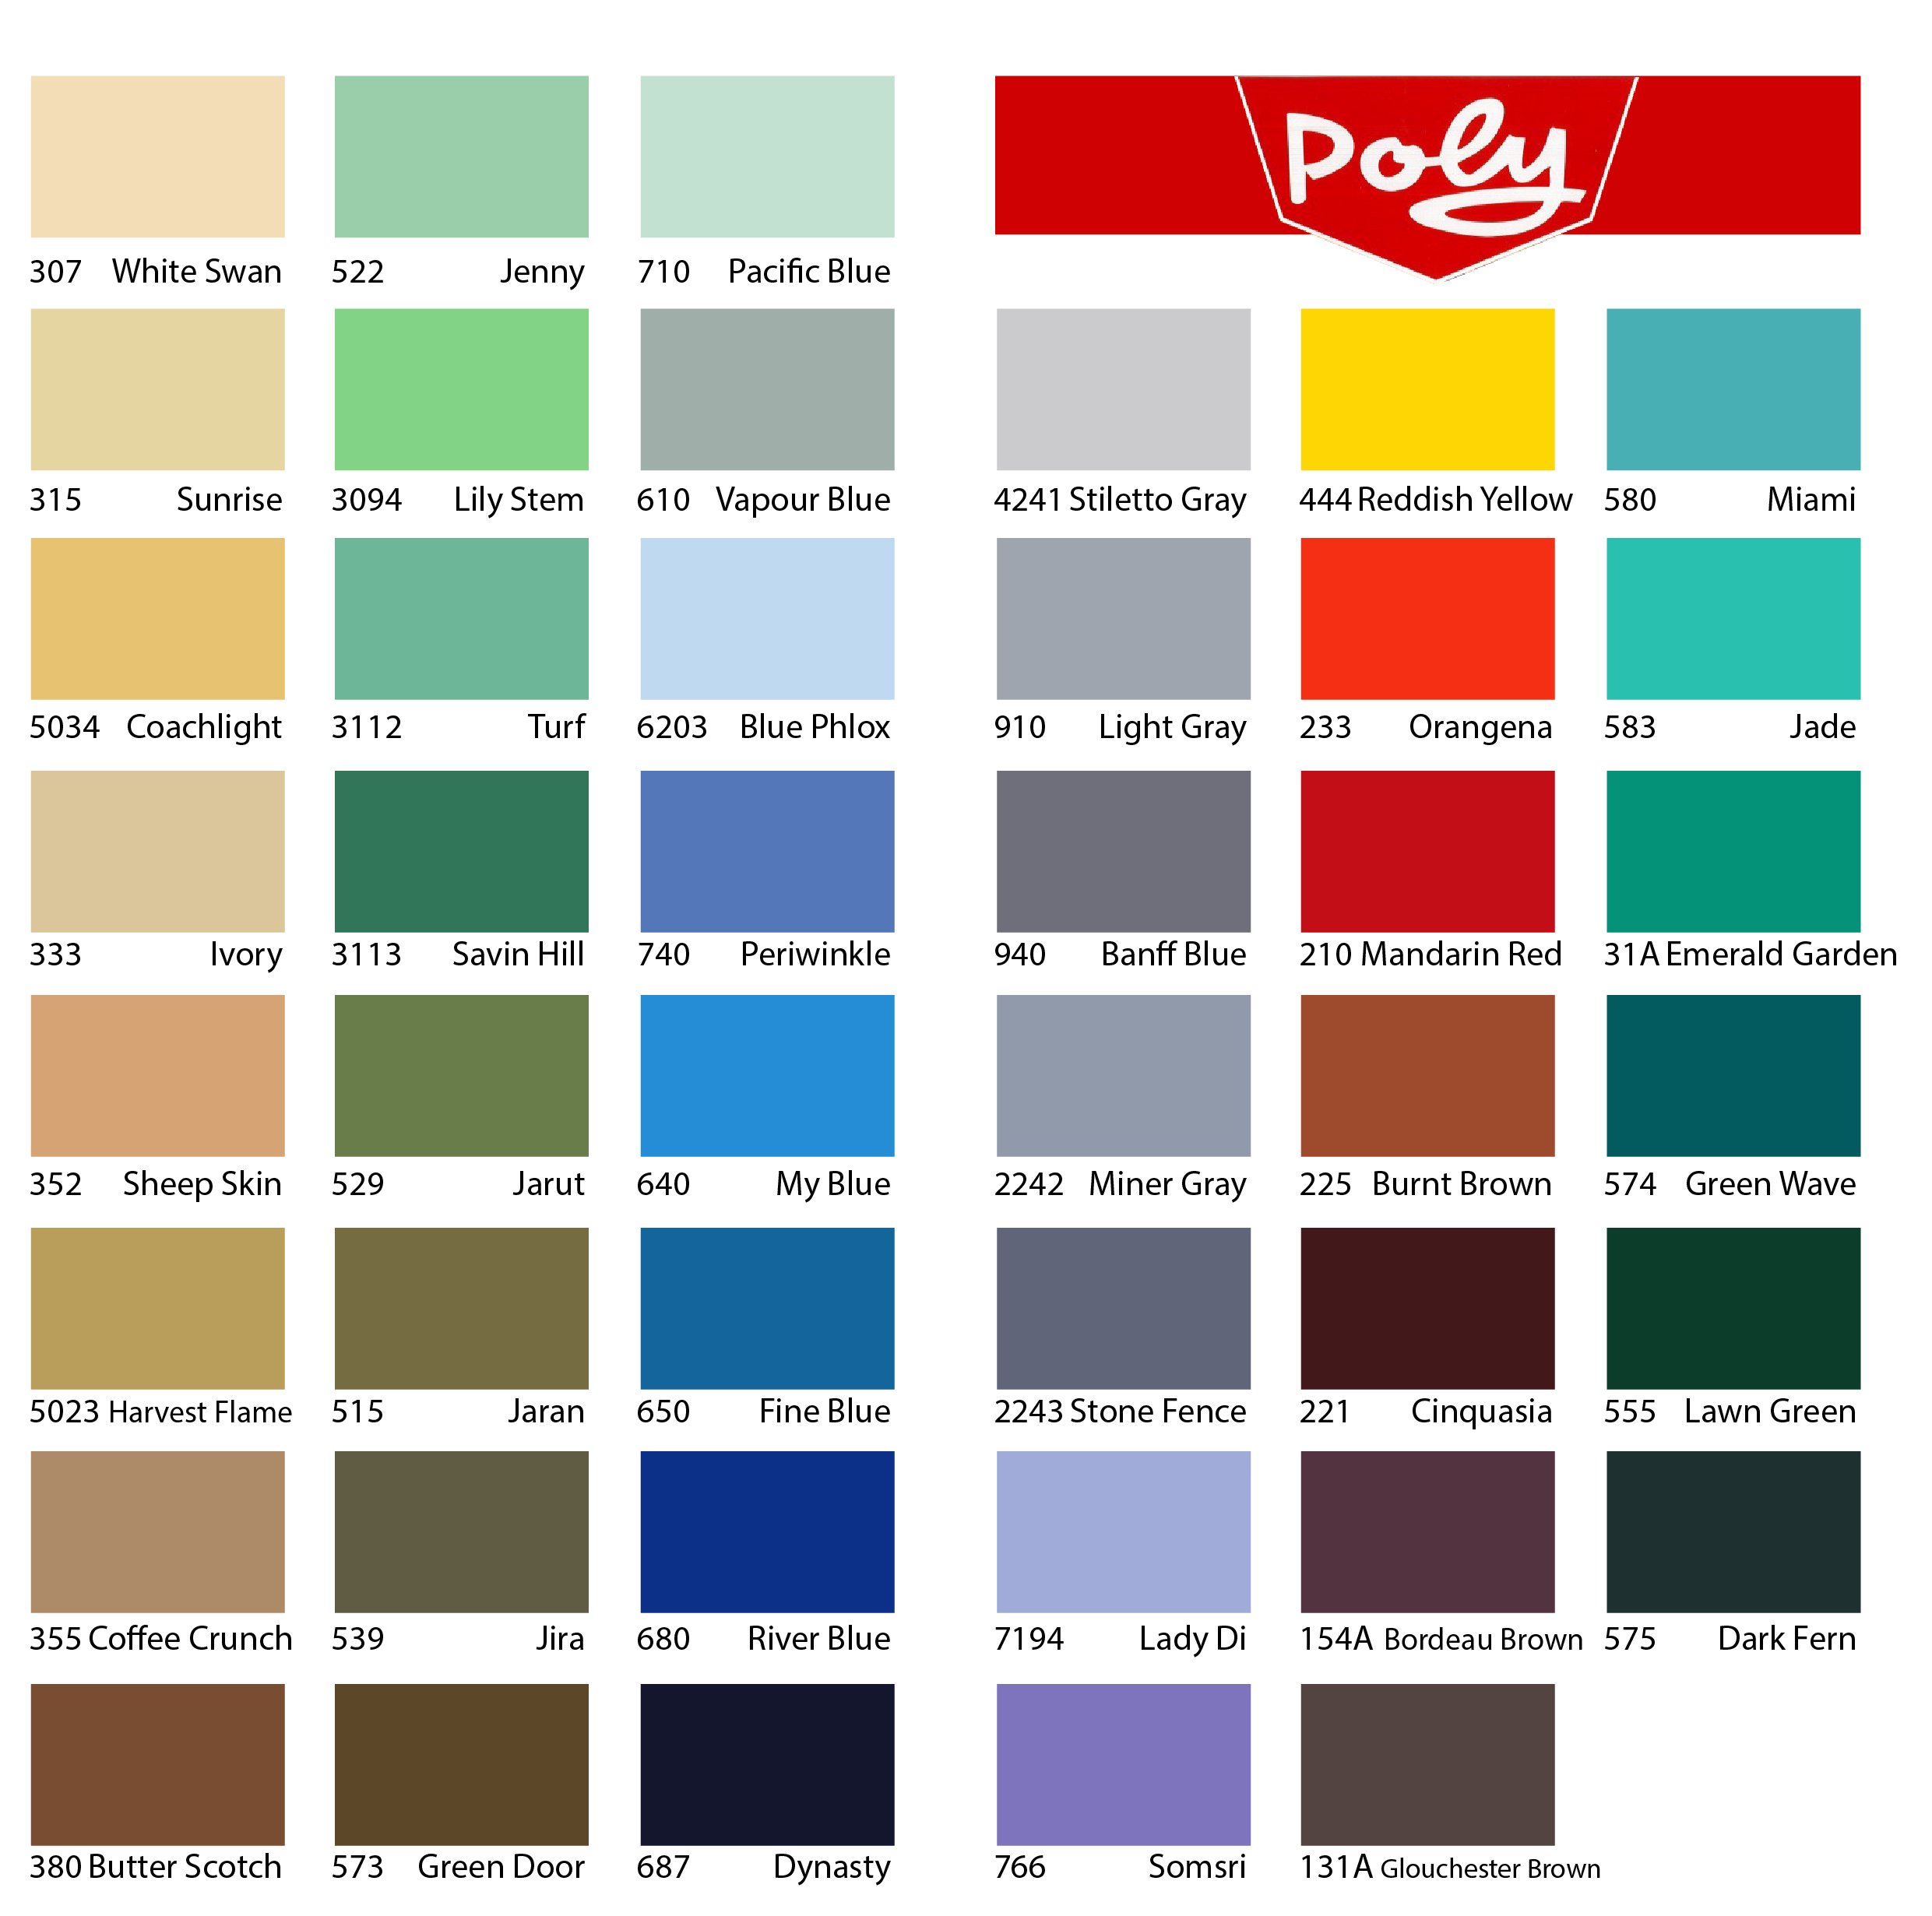 Poly Alkyd được bán tại Siêu Thị Sơn là loại sơn chất lượng cao với độ bền cực cao và tính năng ưu việt. Hãy xem những hình ảnh liên quan để khám phá thêm về sản phẩm này và hưởng các ưu đãi tại Siêu Thị Sơn.